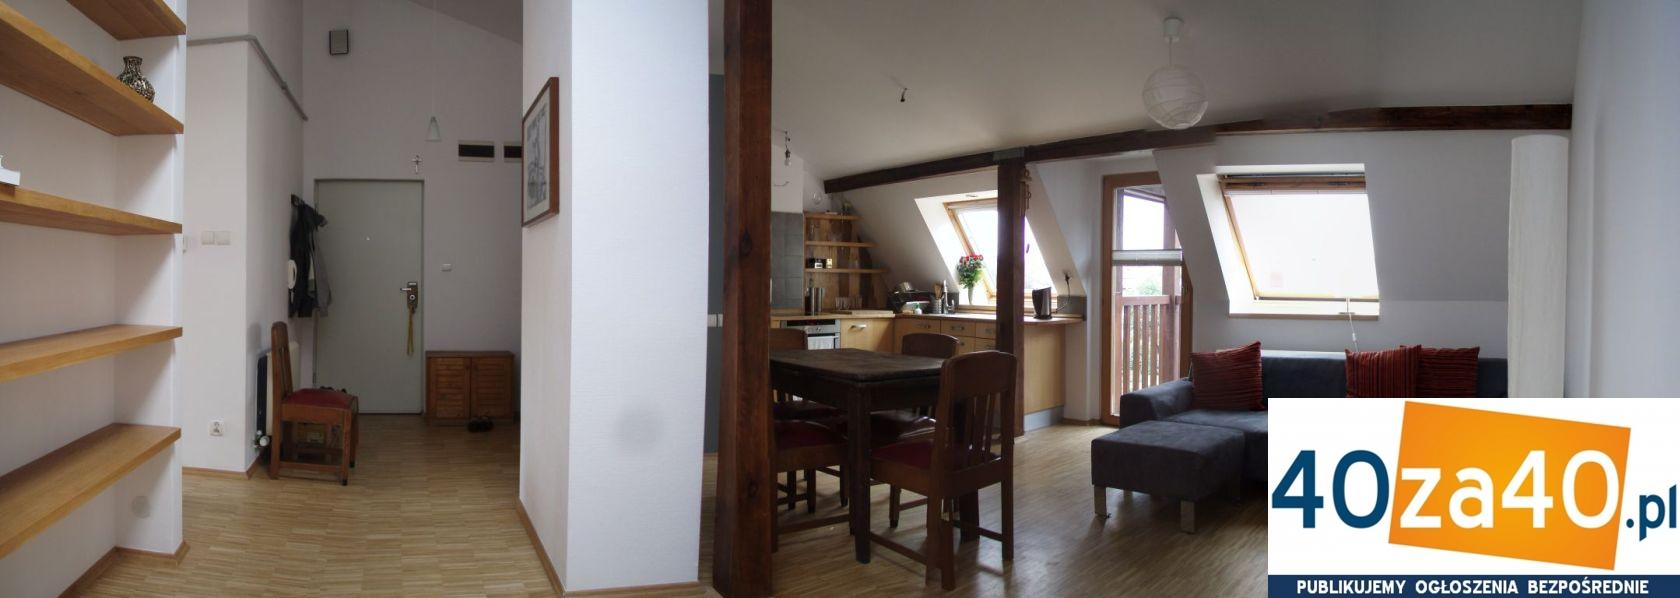 Mieszkanie do wynajęcia, pokoje: 3, cena: 2 200,00 PLN, Kraków, kontakt: +48692445555